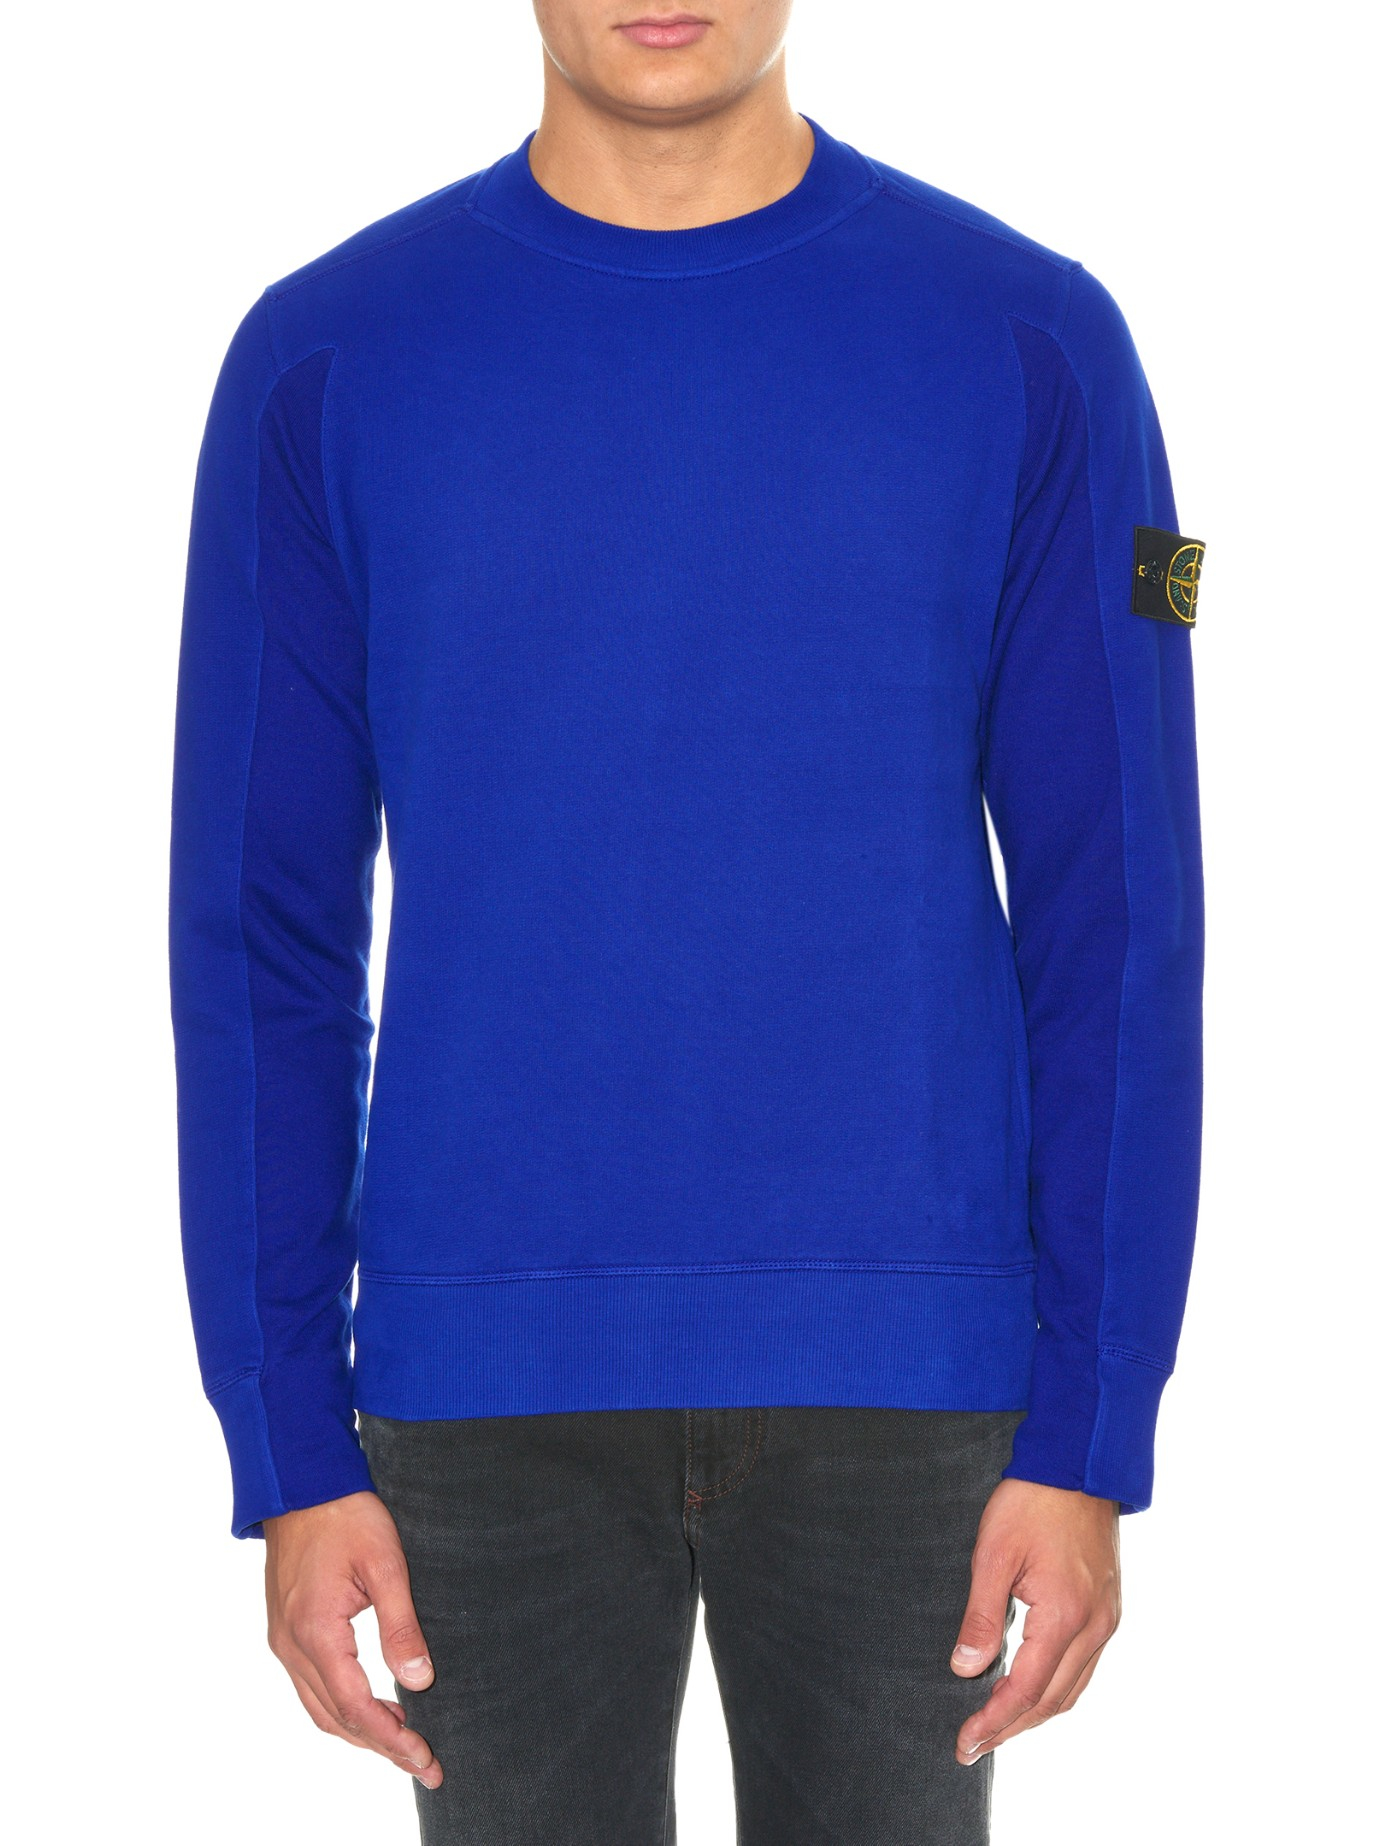 Stone Island Blue Sweater Italy, SAVE 33% - www.fourwoodcapital.com